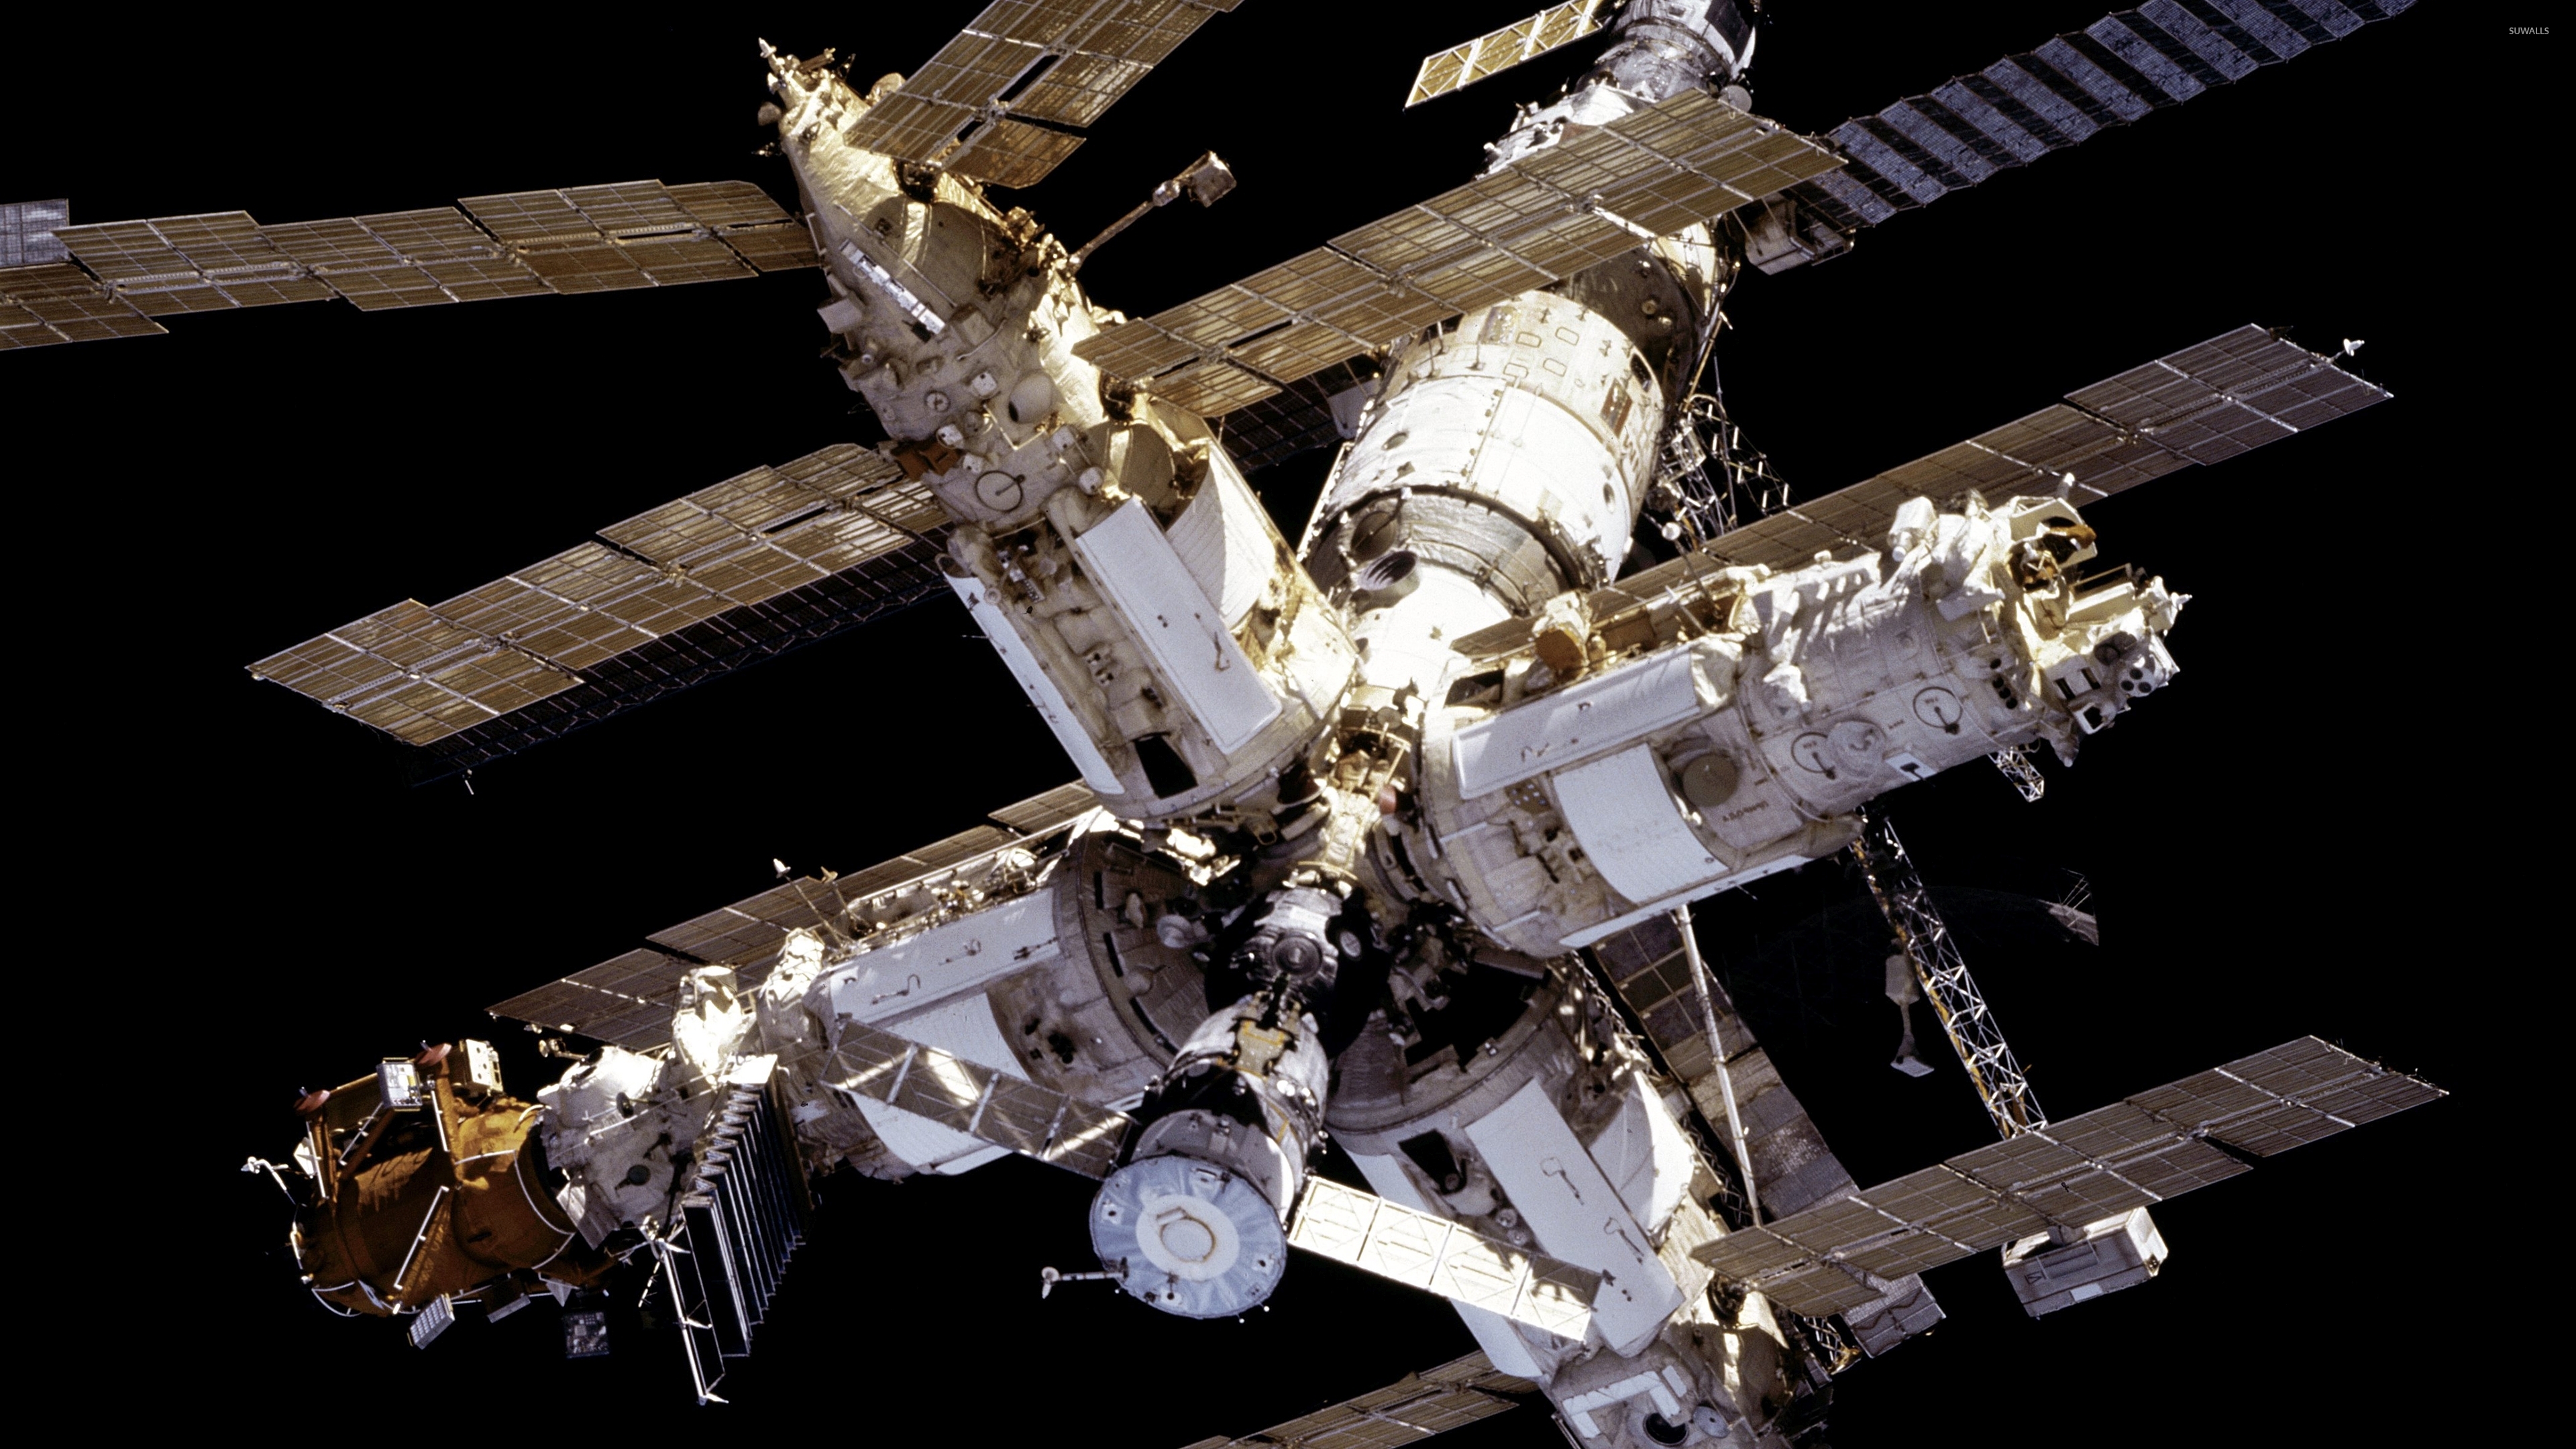 Mir medium. Станция мир 1986. Орбитальная станция мир 1986 года. Запуск космической орбитальной станции «мир». Космическая станция «мир» (20.02.1986-16.03.2001).